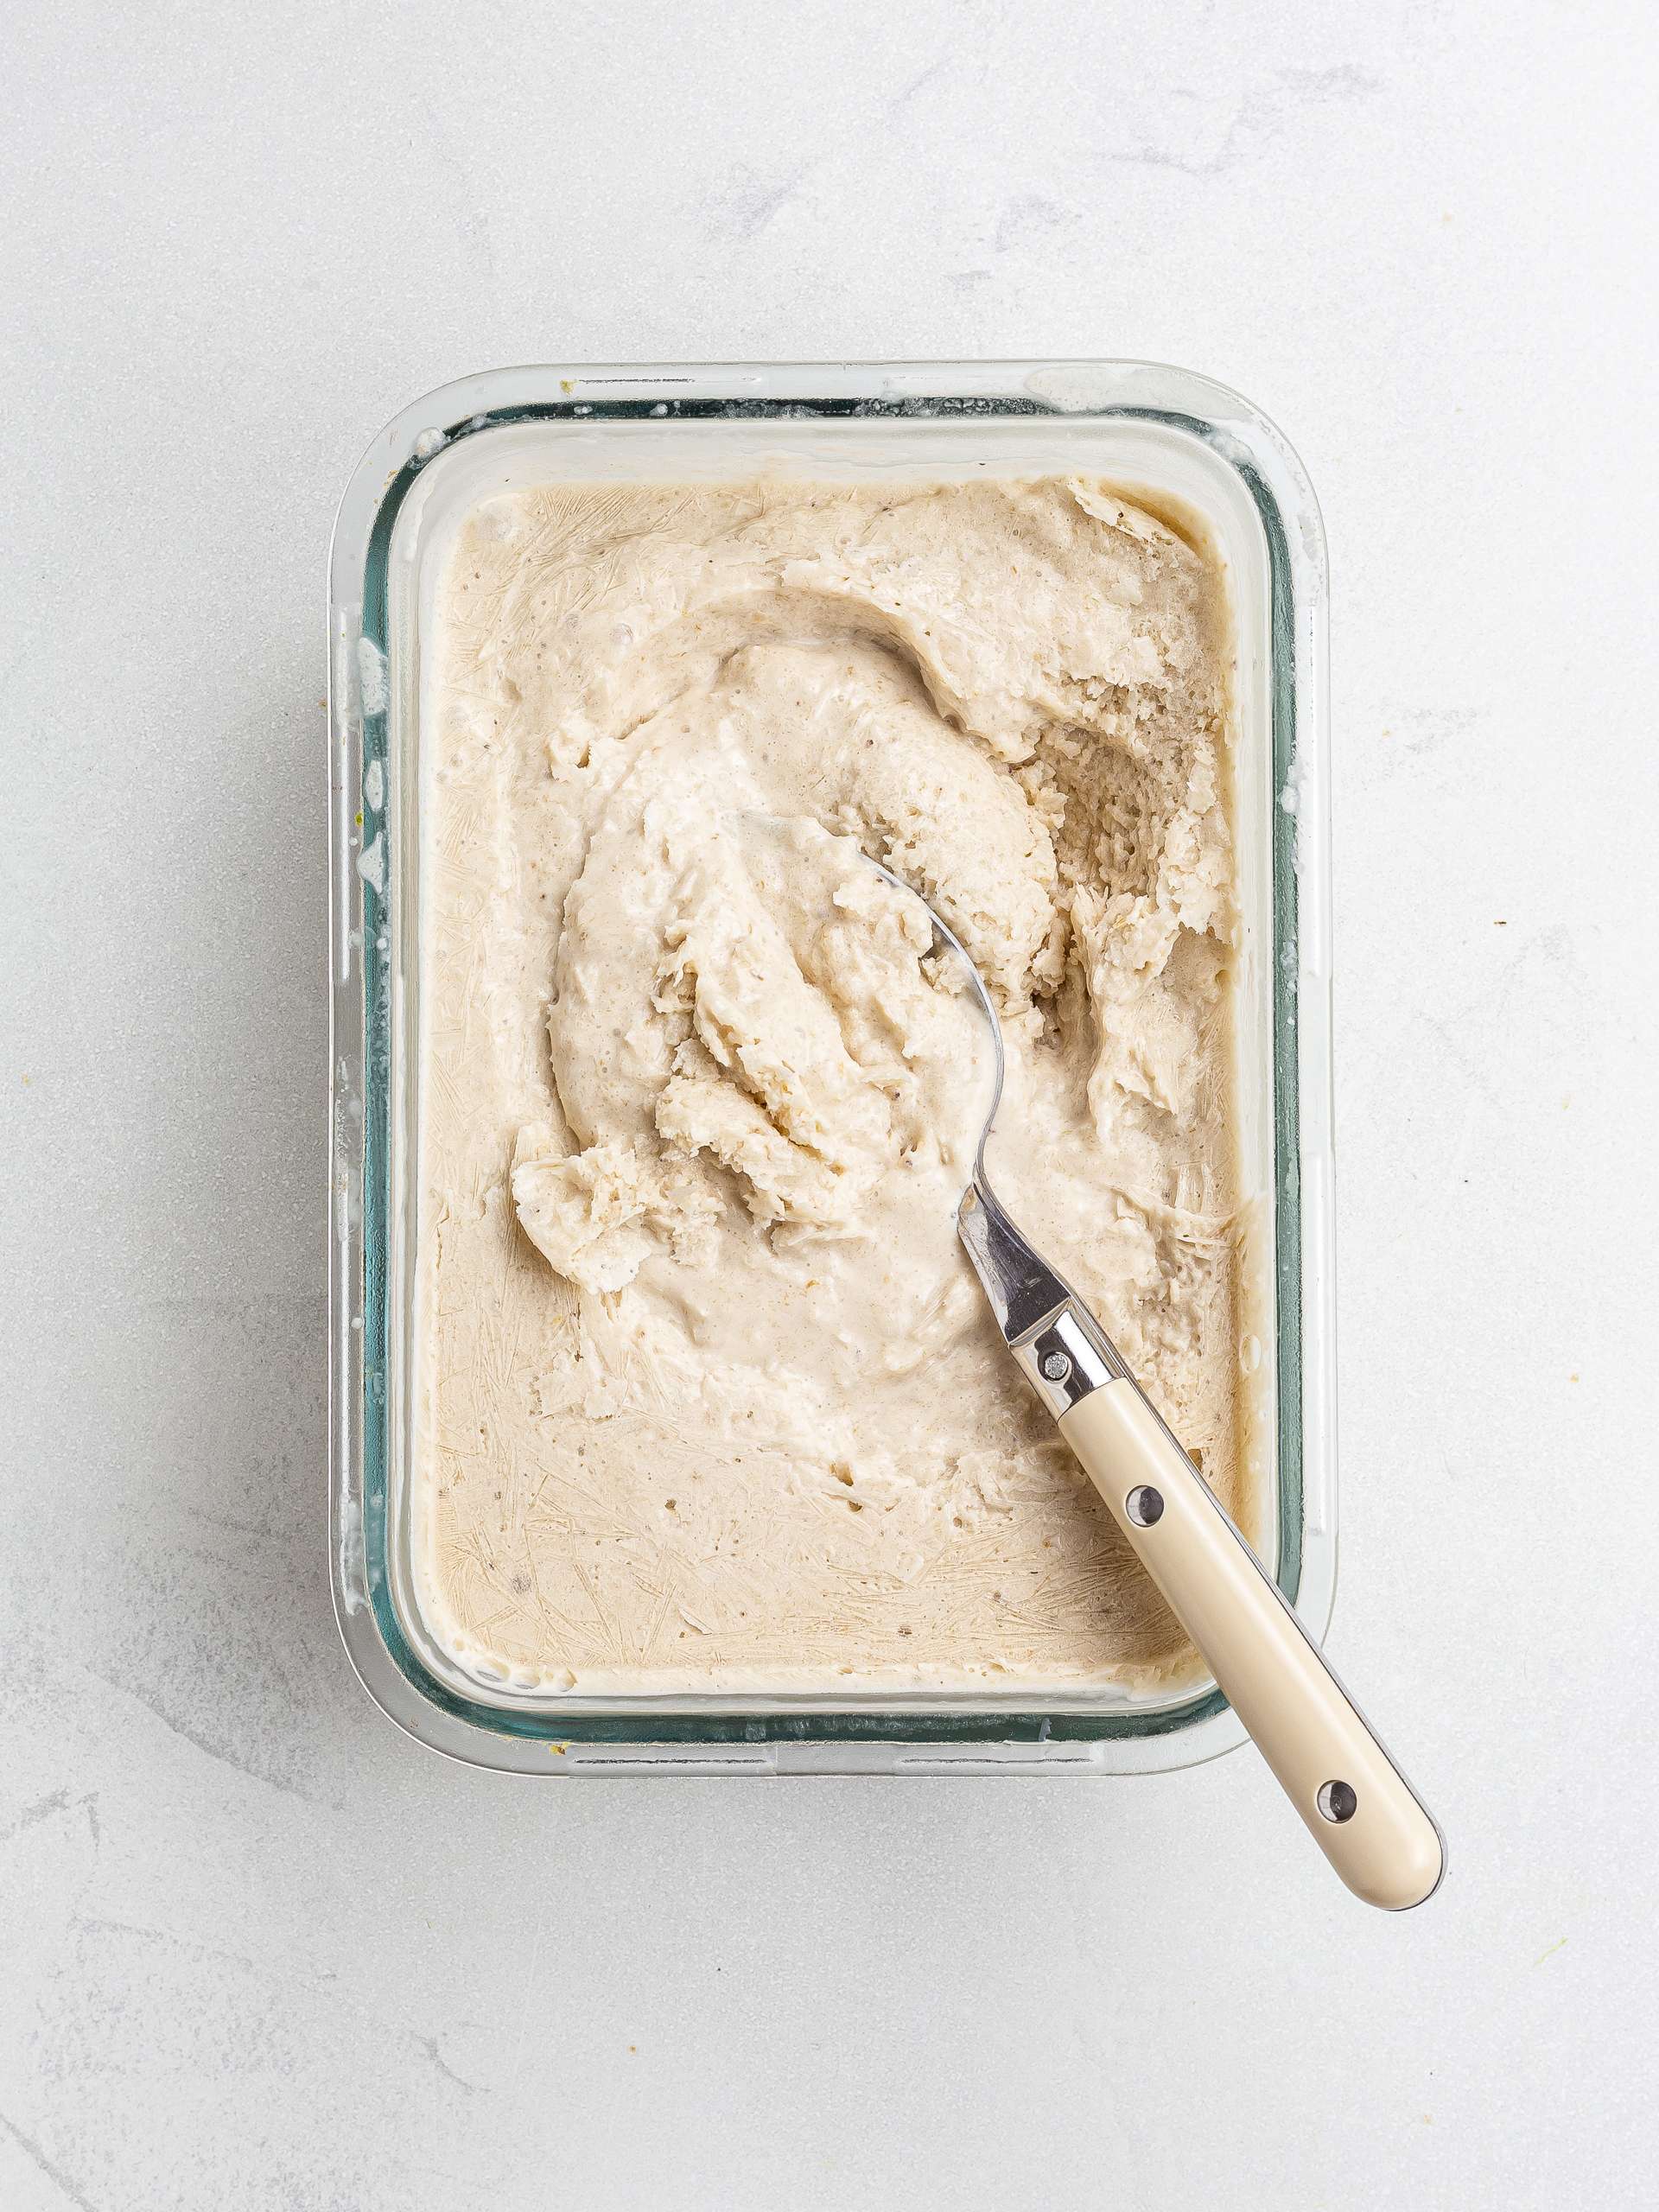 churning vegan ice cream by hand